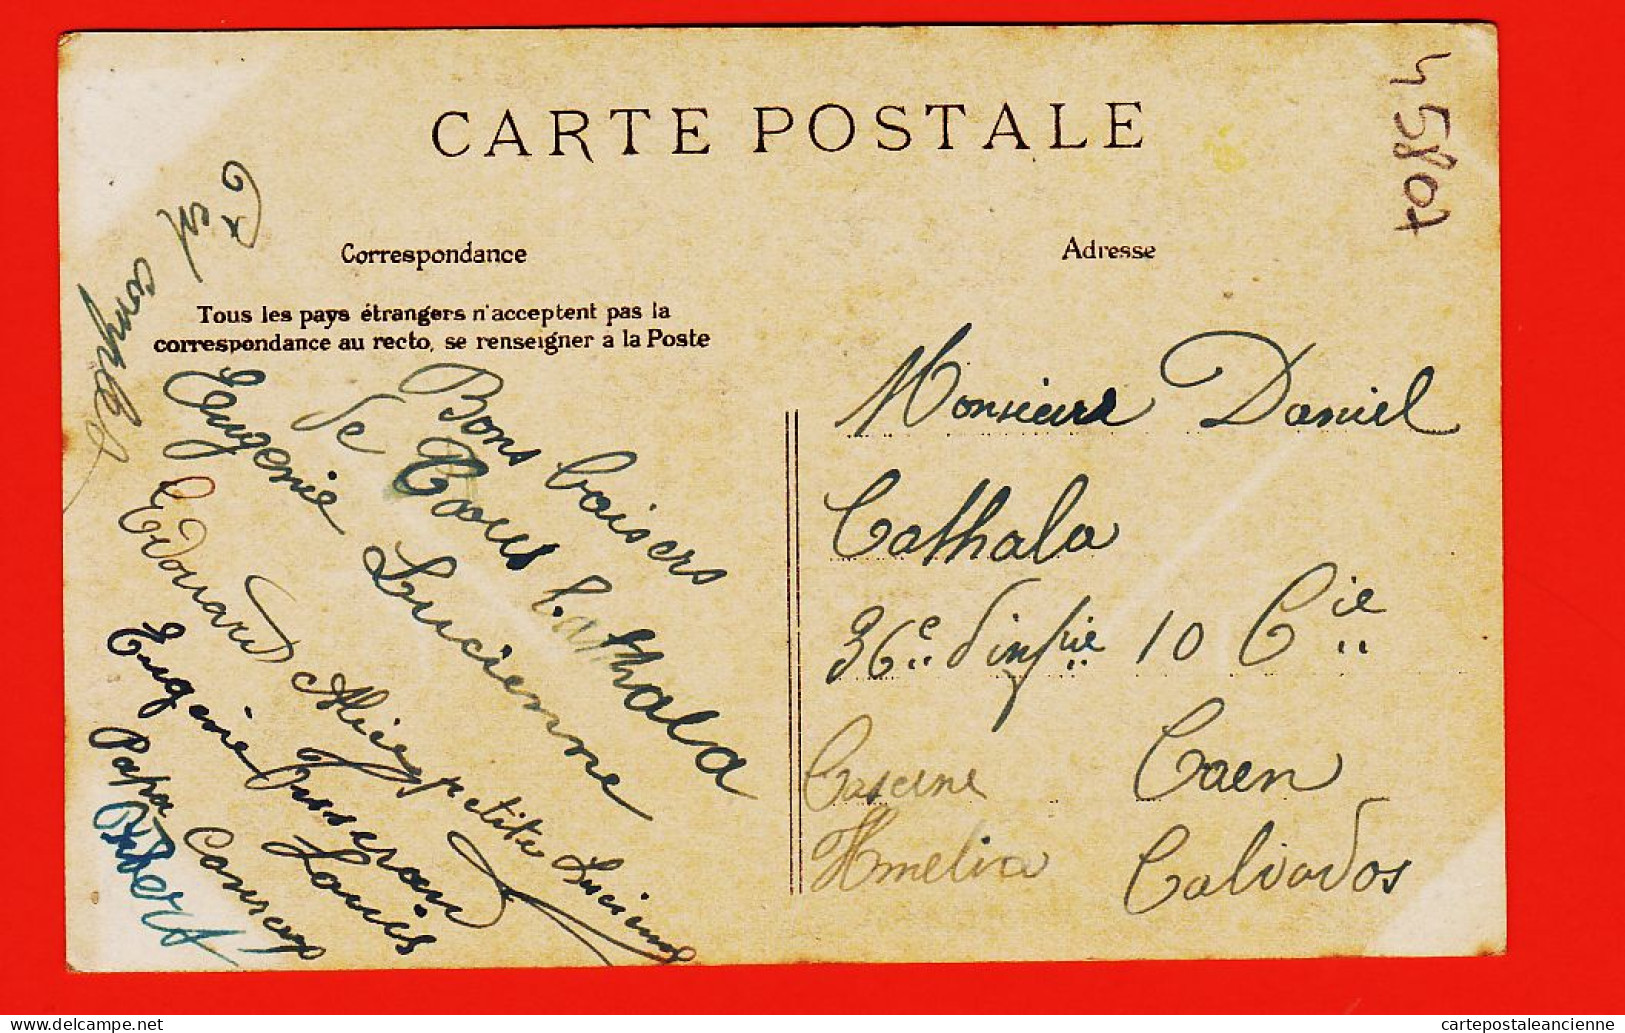 05158 / ⭐ (•◡•) ◉ Marchand De LAPINS Metier Campagne 1915s à Daniel CATHALA 36e R.I Caserne Hamelin Caen ELD LE DELEY - Venters